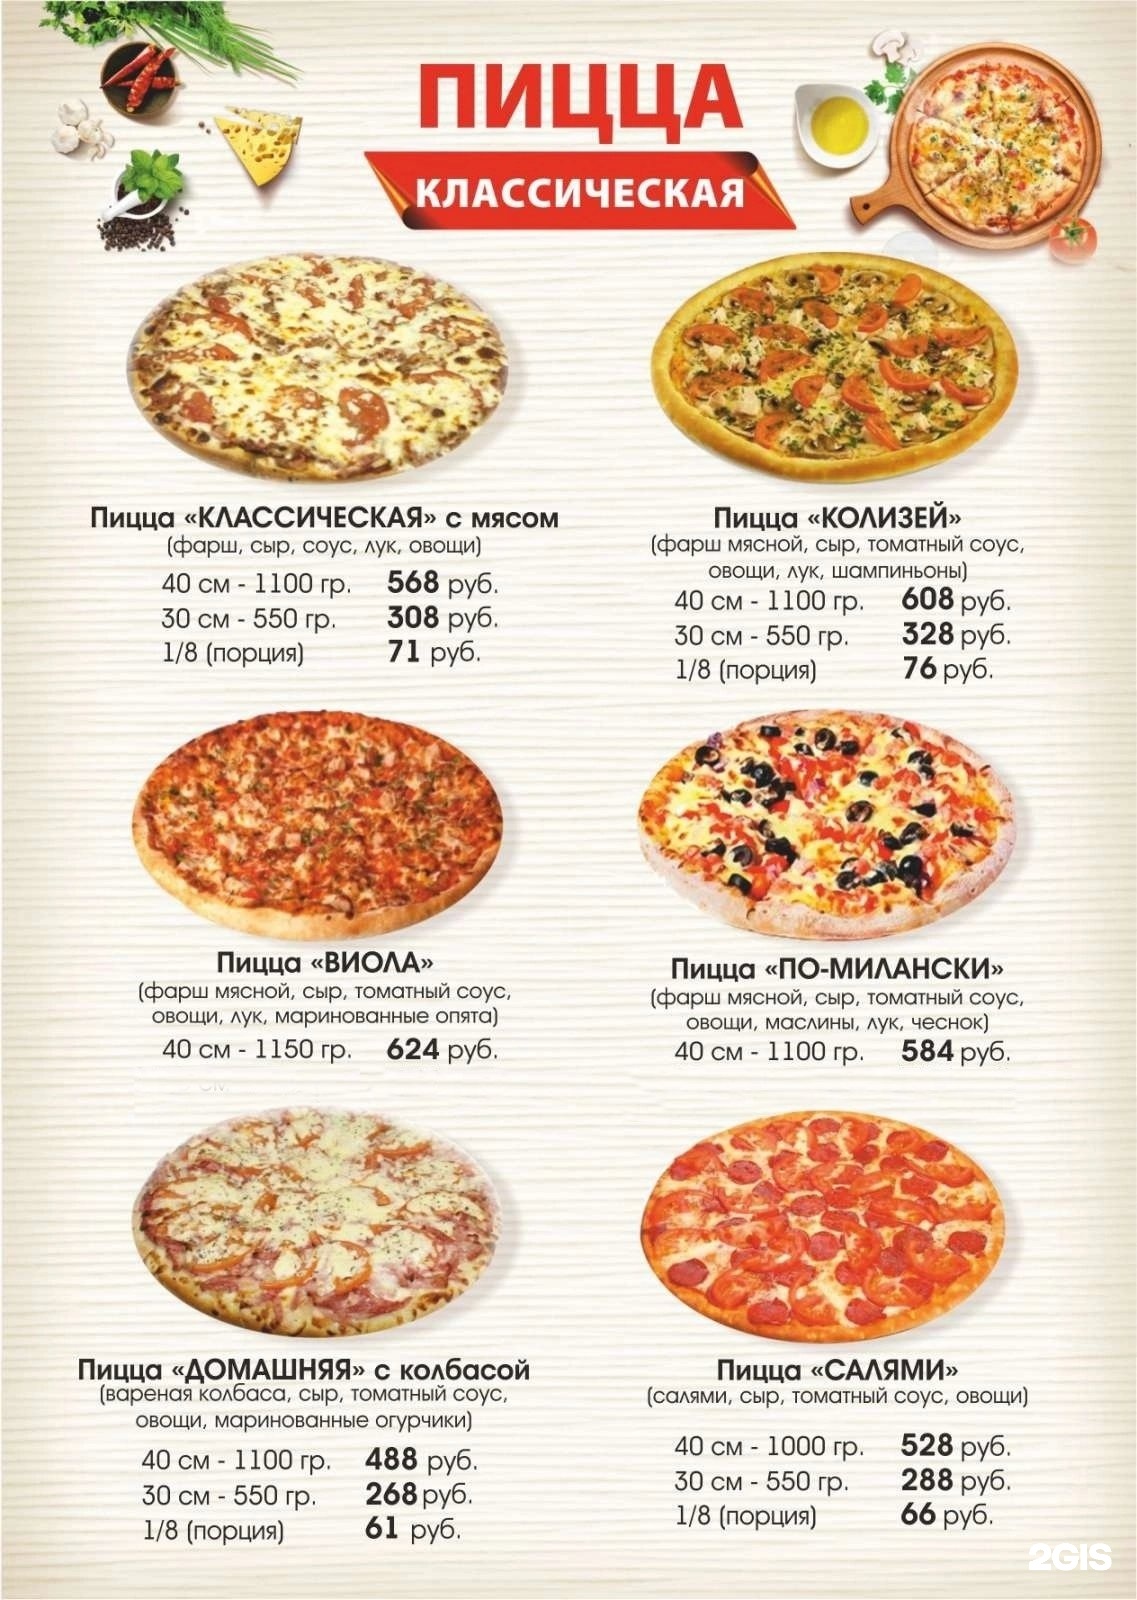 цены на пиццу фото фото 6